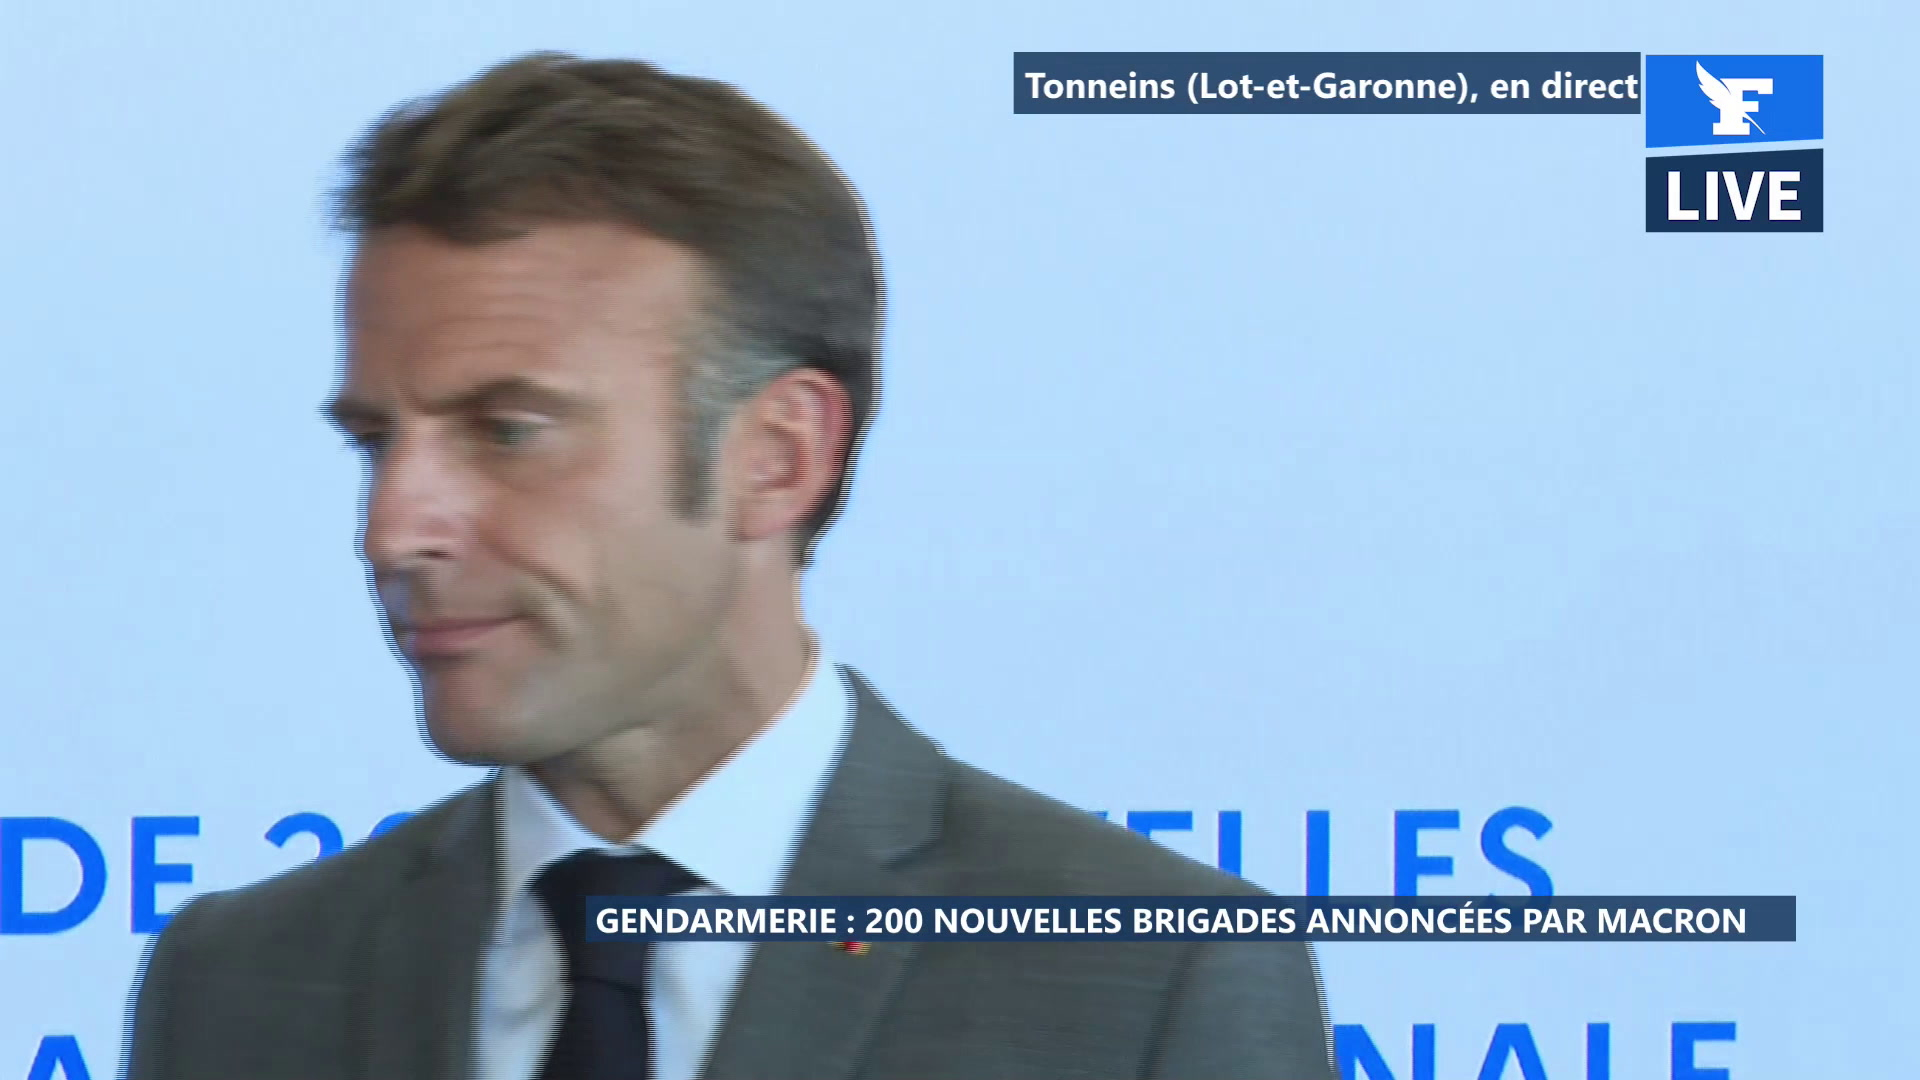 Gendarmerie: Emmanuel Macron annonce la création de 200 nouvelles brigades et de 3500 nouveaux postes